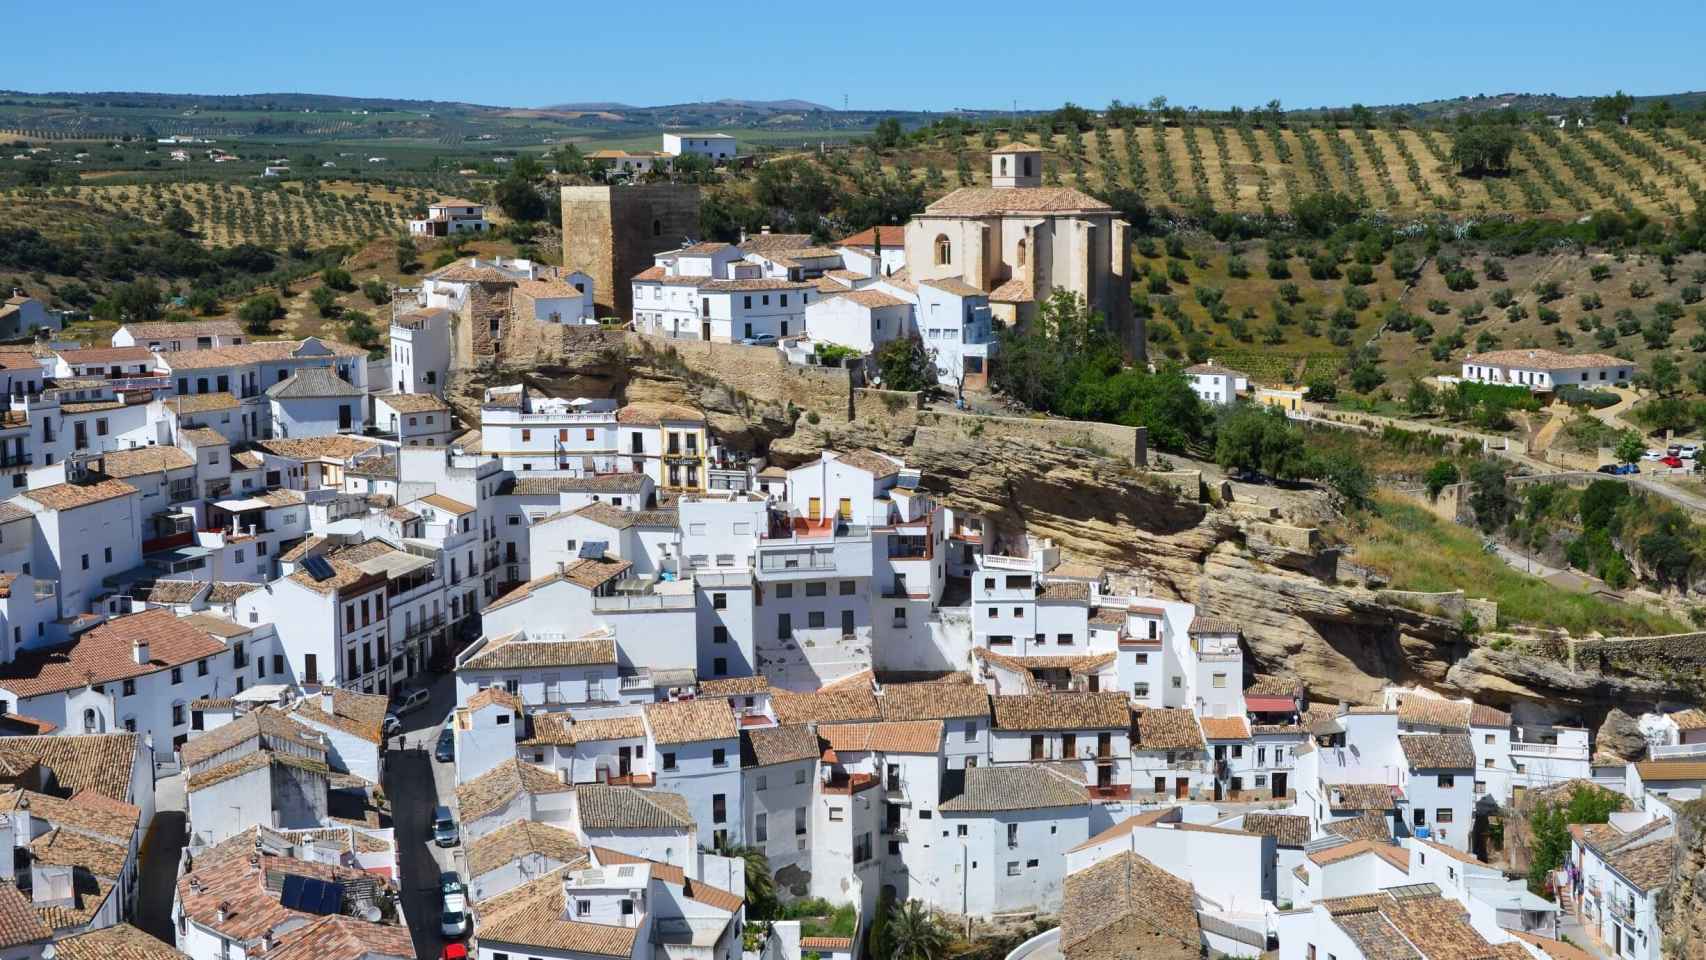 Setenil de las Bodegas, el pueblo más espectacular de España